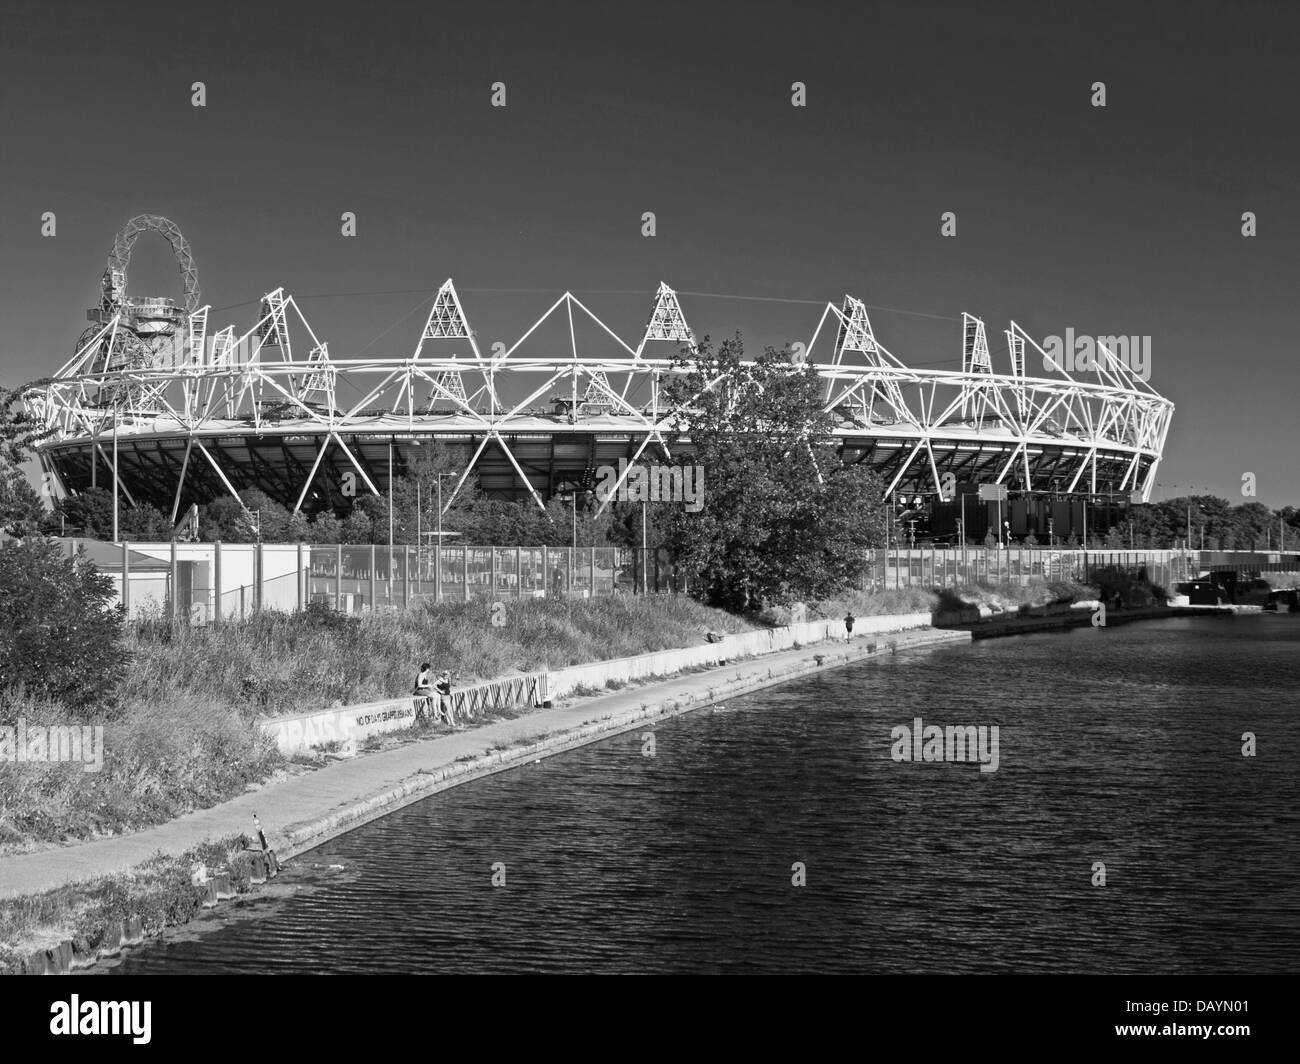 Visualizzazione bianco e nero dello Stadio Olimpico e la ArcelorMittal orbita attraverso il fiume Lea (Lee) Navigazione, Hackney Wick Foto Stock